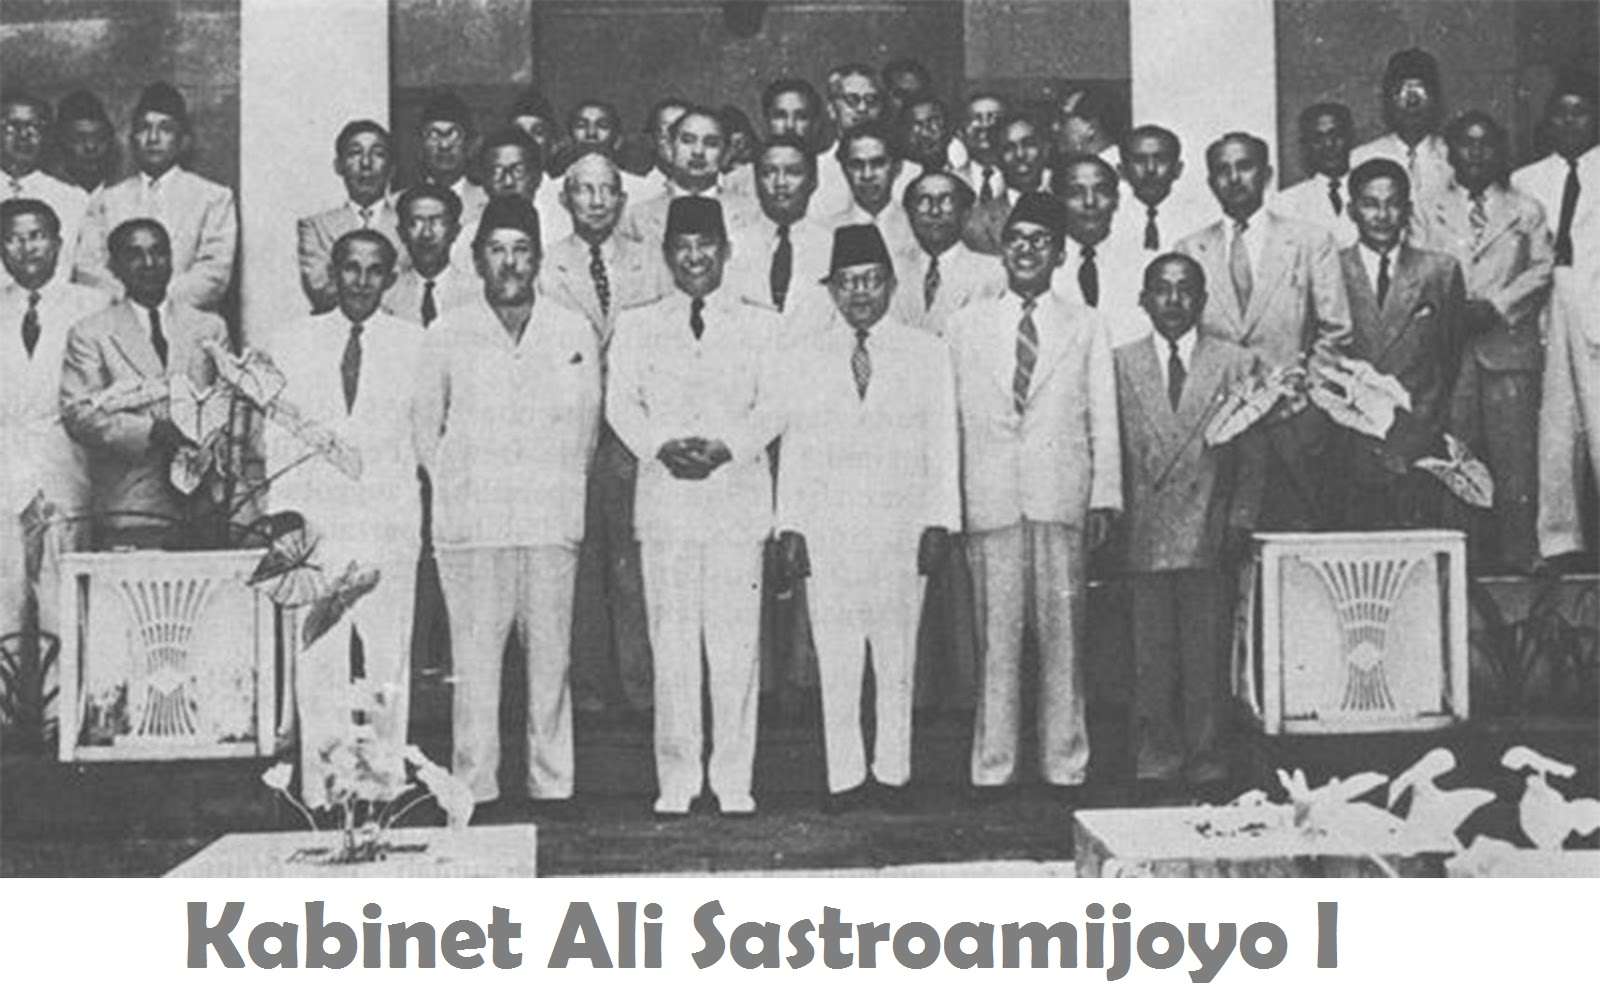 Ali Baba, kolaborasi gagal lokal dan tionghoa 1951-1952